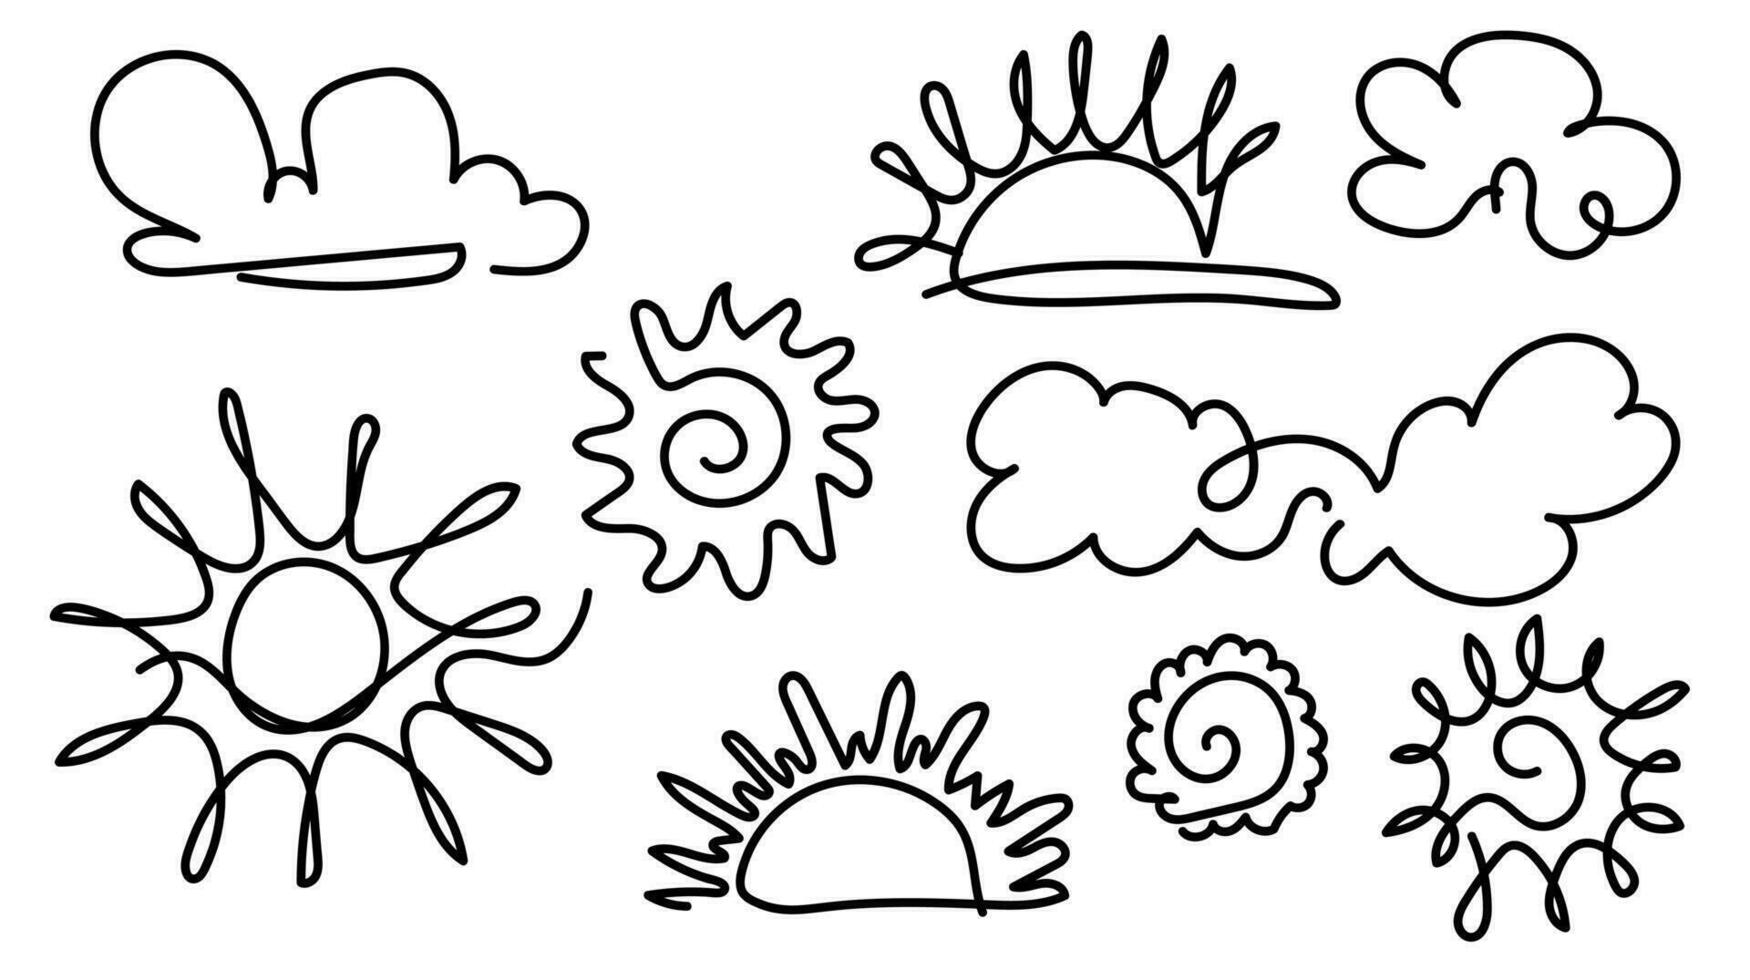 sole continuo uno linea disegno. scarabocchio illustrazione di sole e nuvole. vettore